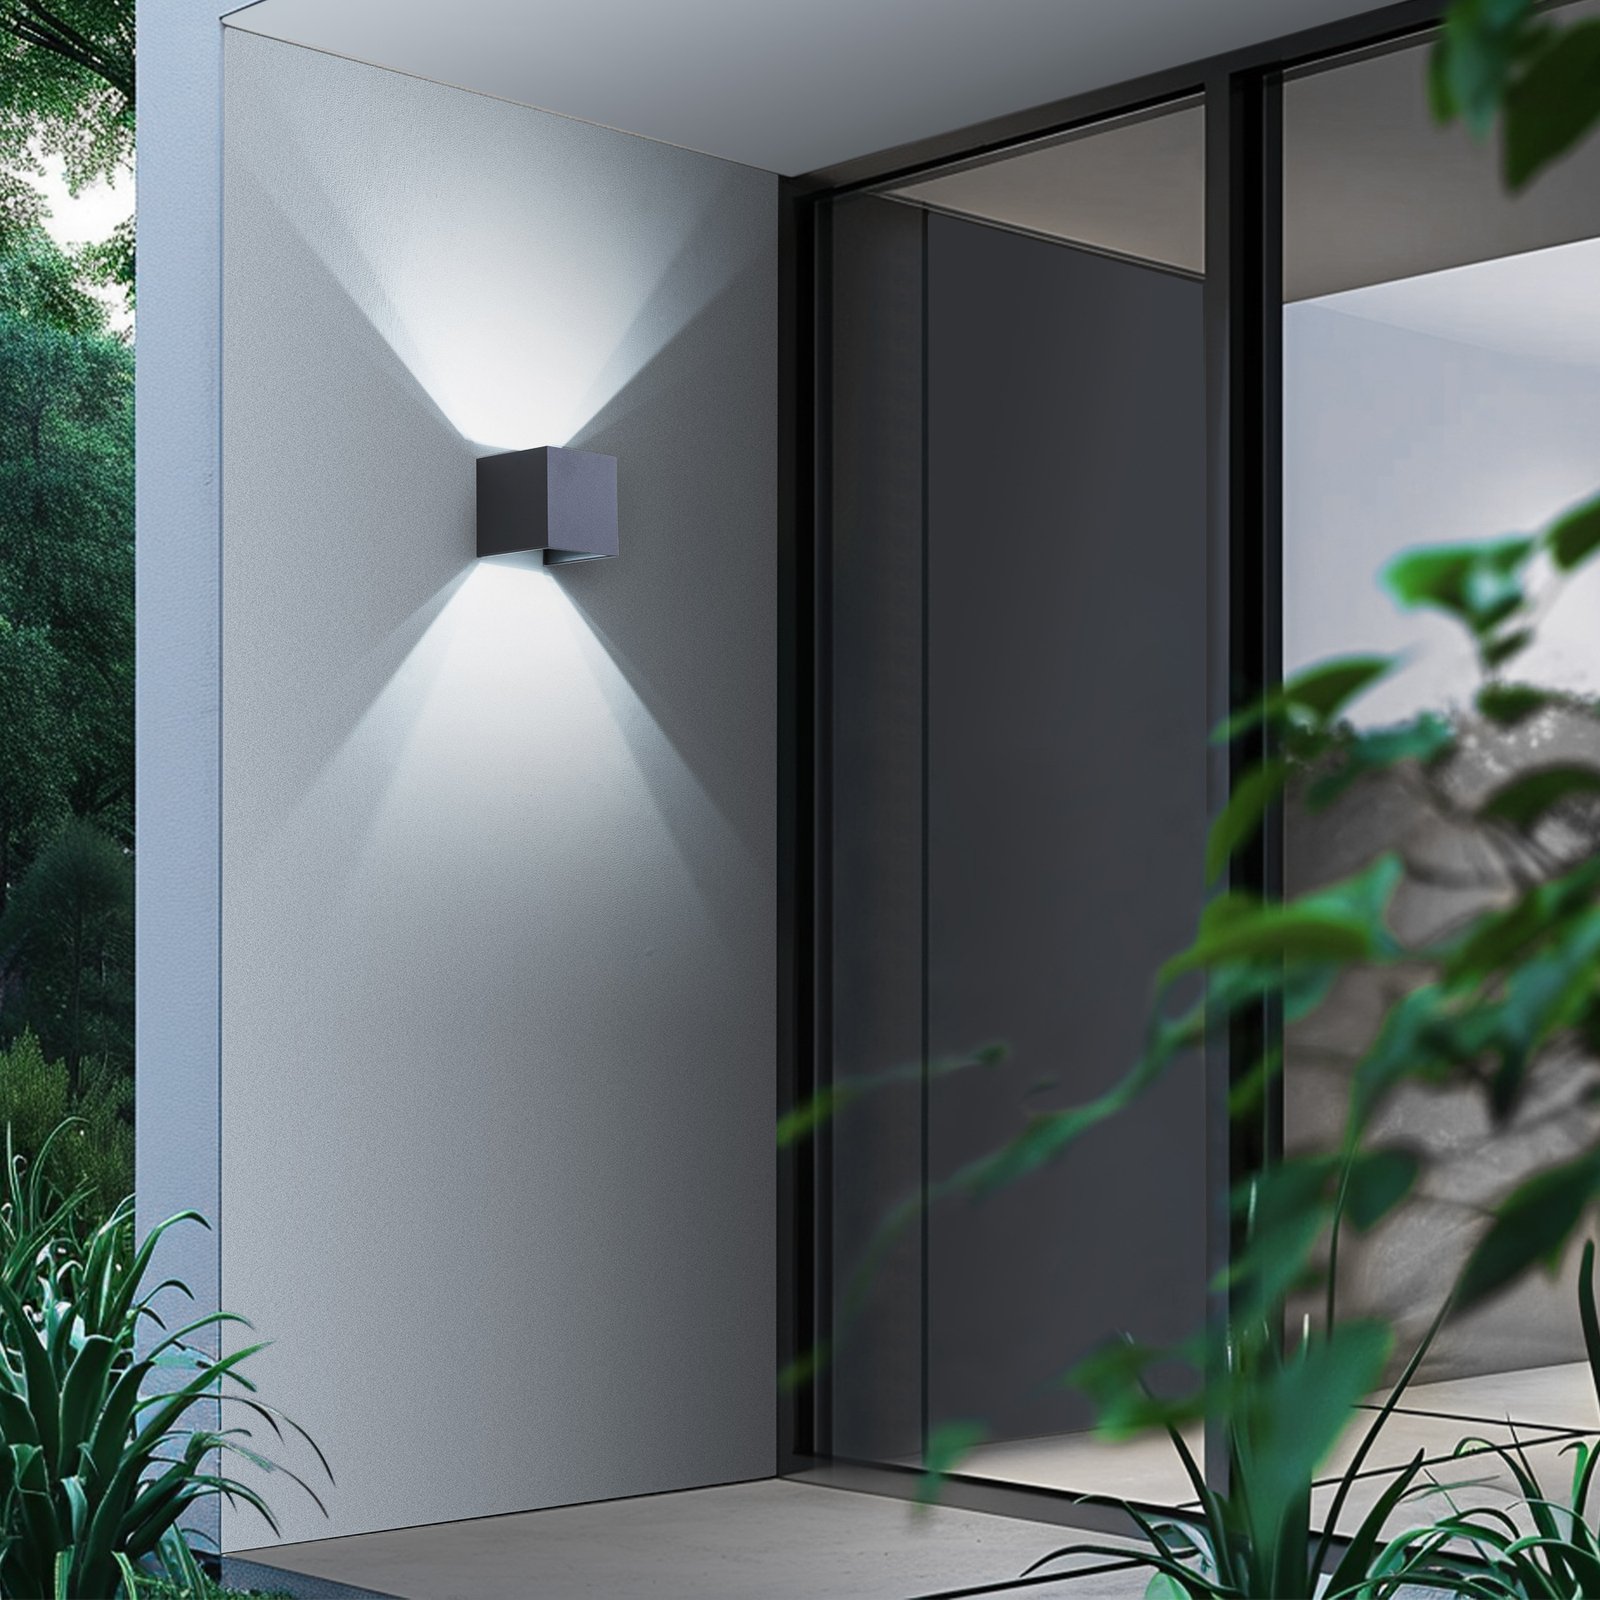 Lindby Smart LED outdoor wall lamp Dara grey angular CCT RGB Tuya